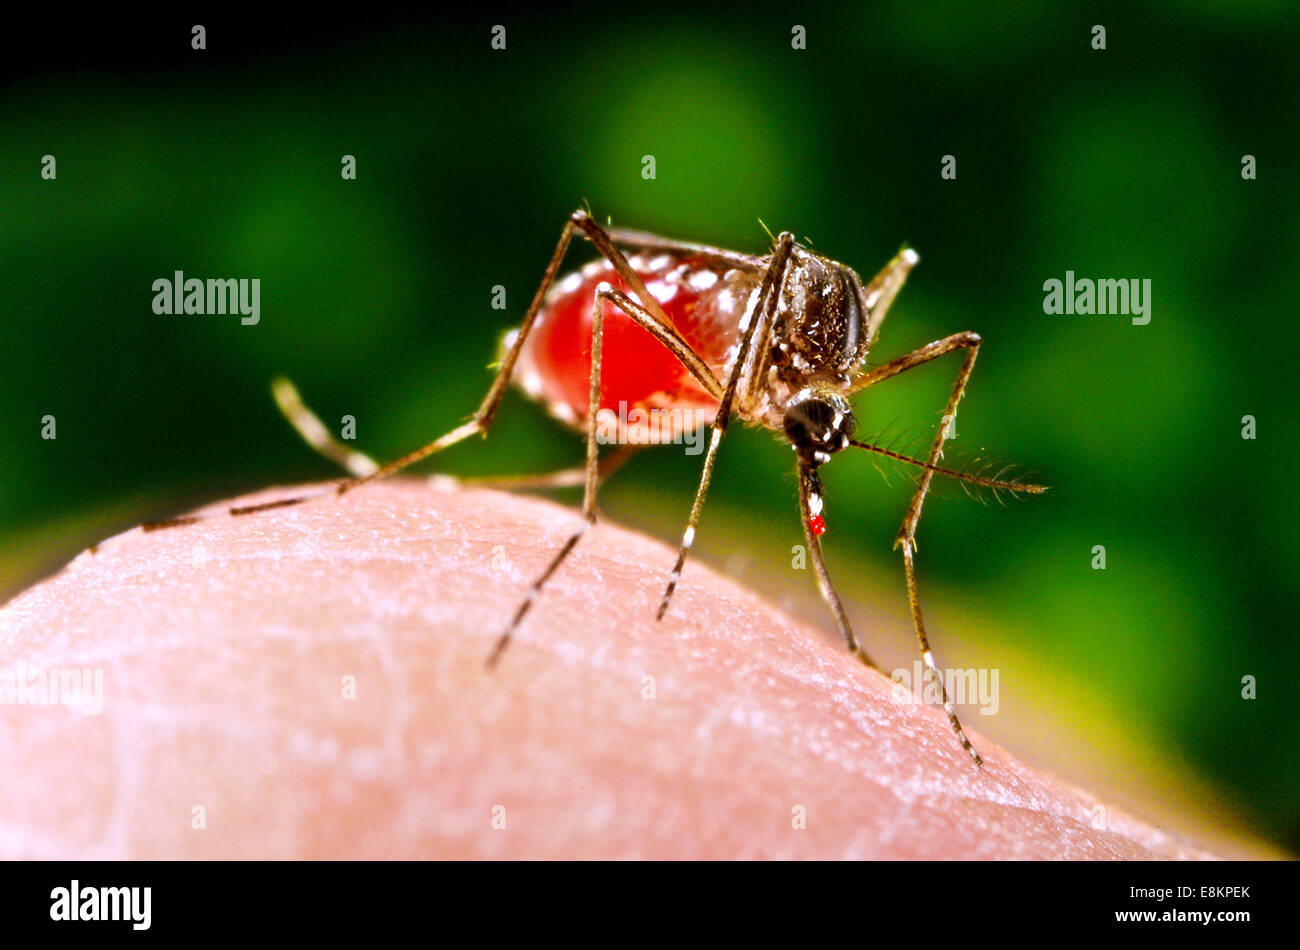 Dieses Bild dargestellt als absolviert sie Aktivitäten zur Gewinnung von Blut-Mahlzeit aus menschlichen Gastgeber war weibliche Aedes Aegypti Mücke Stockfoto